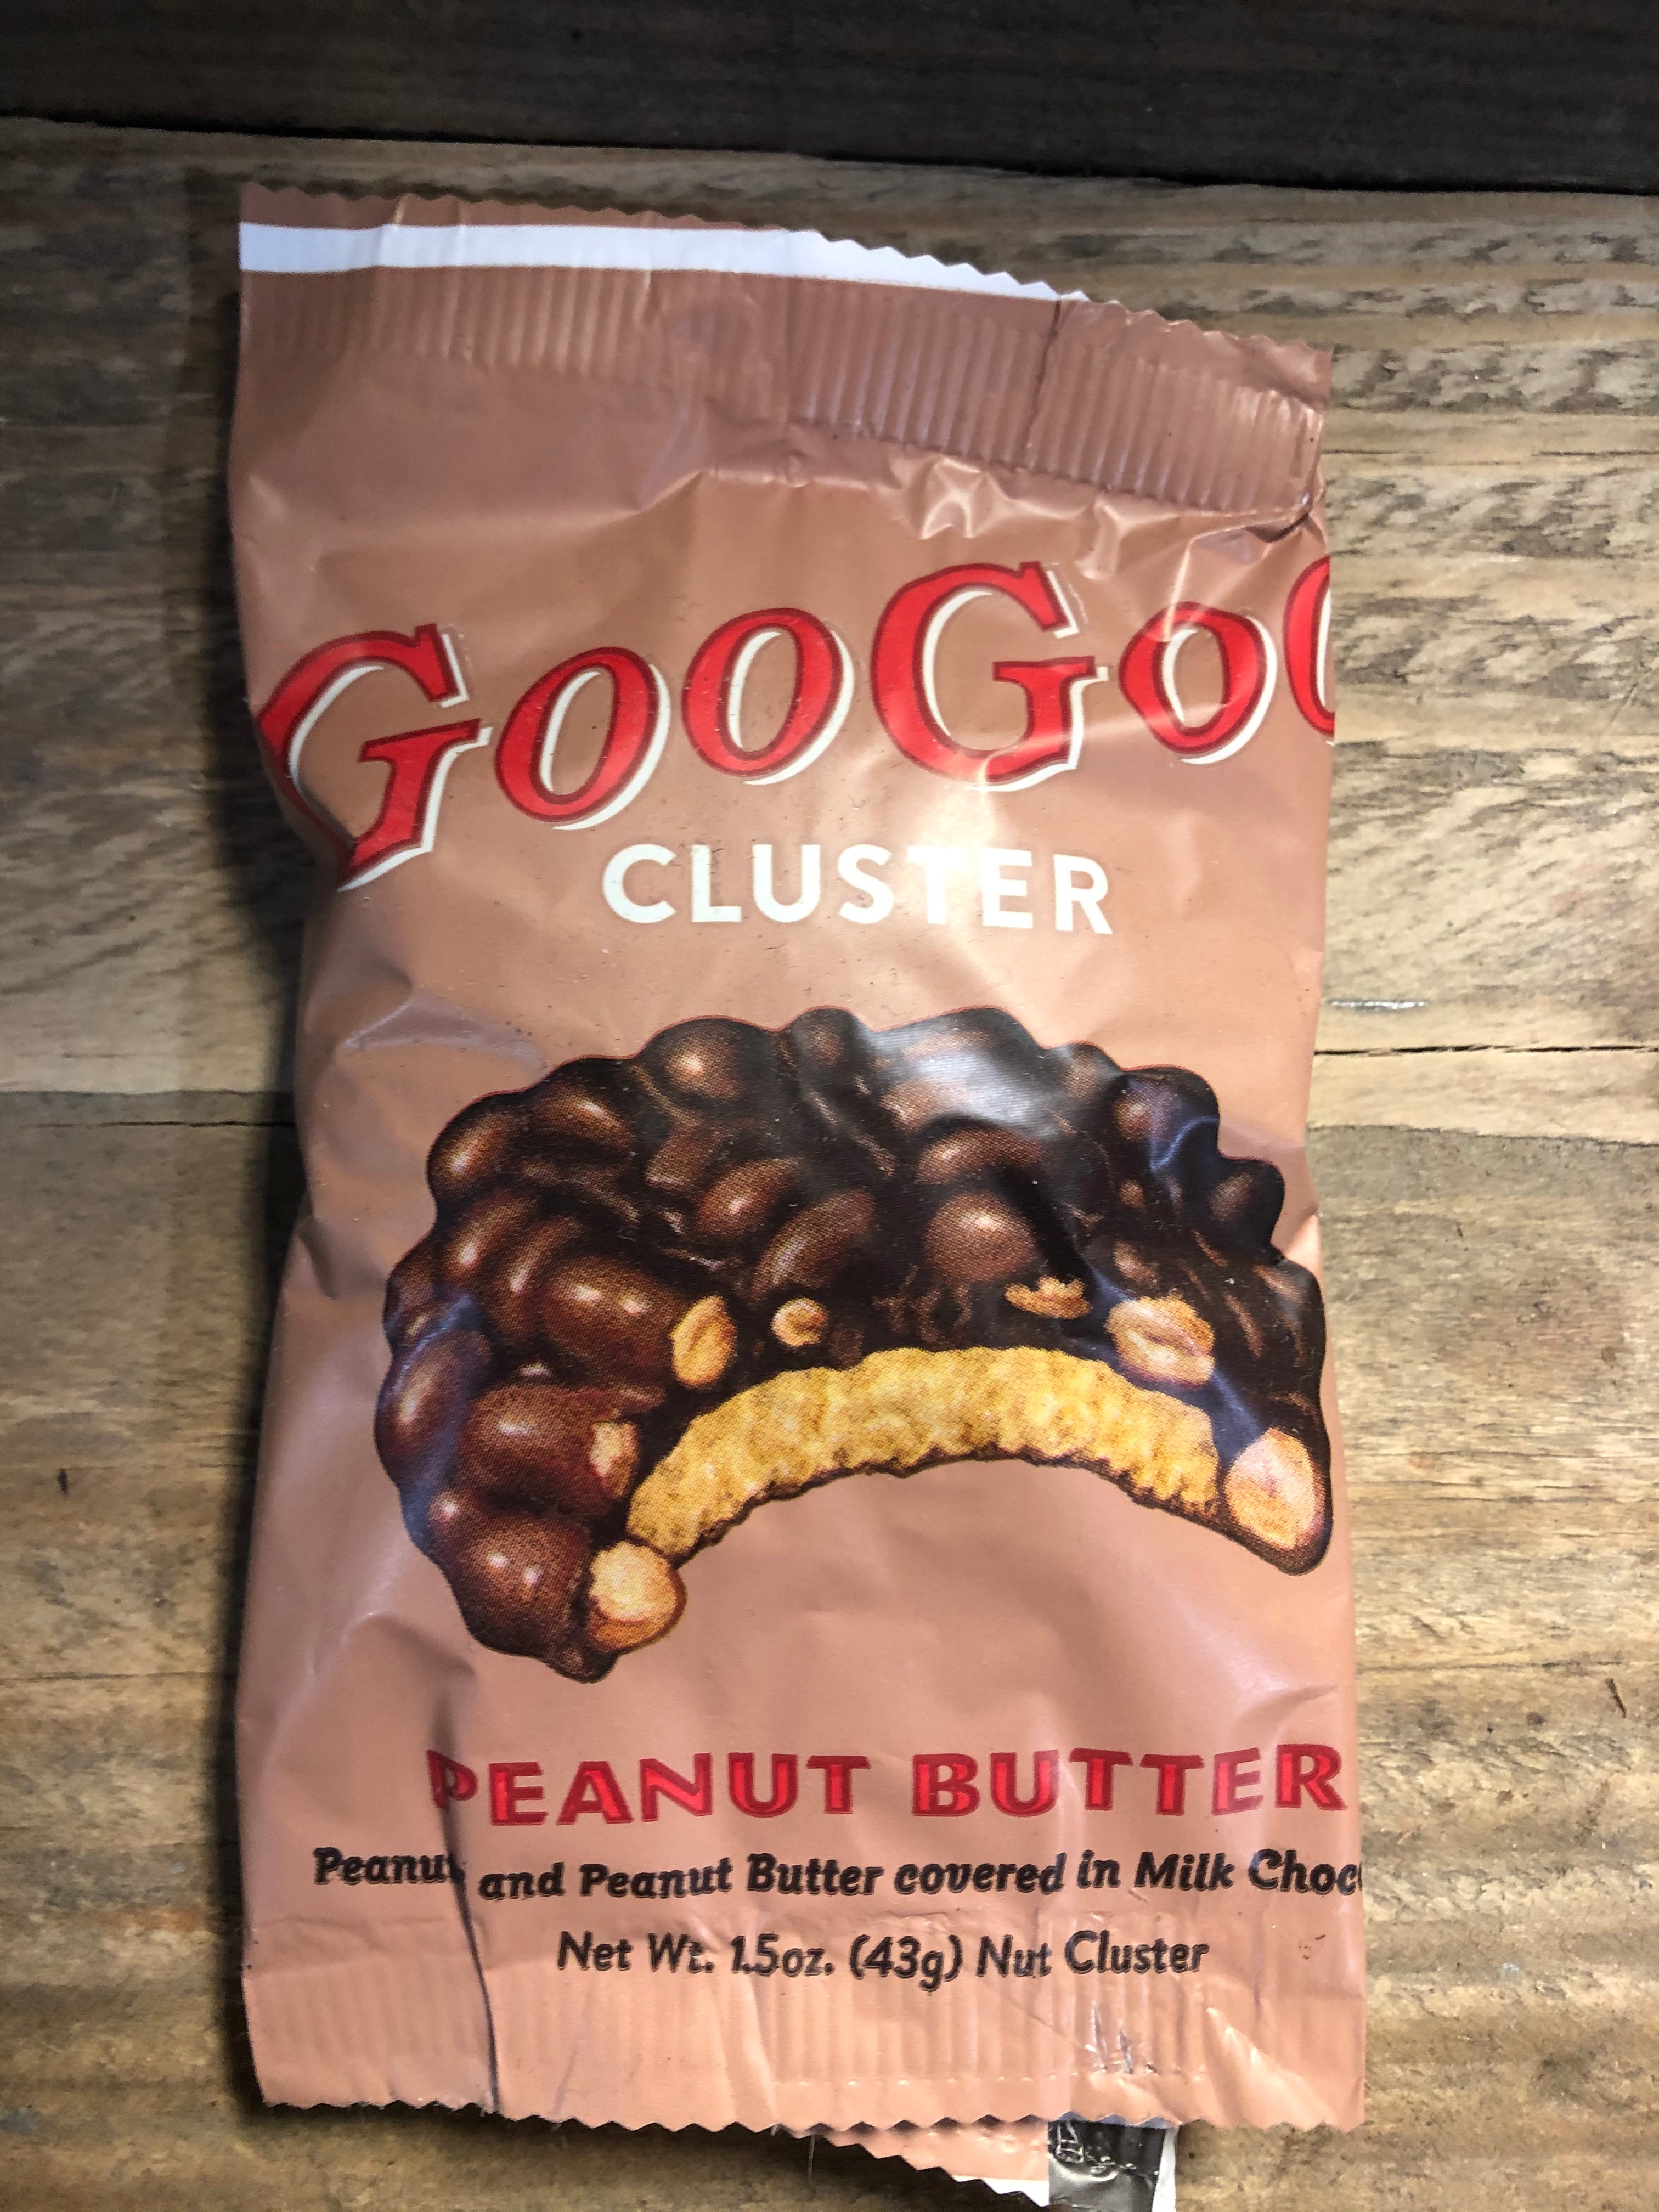 Goo Goo Cluster, The Original - 1.75 oz